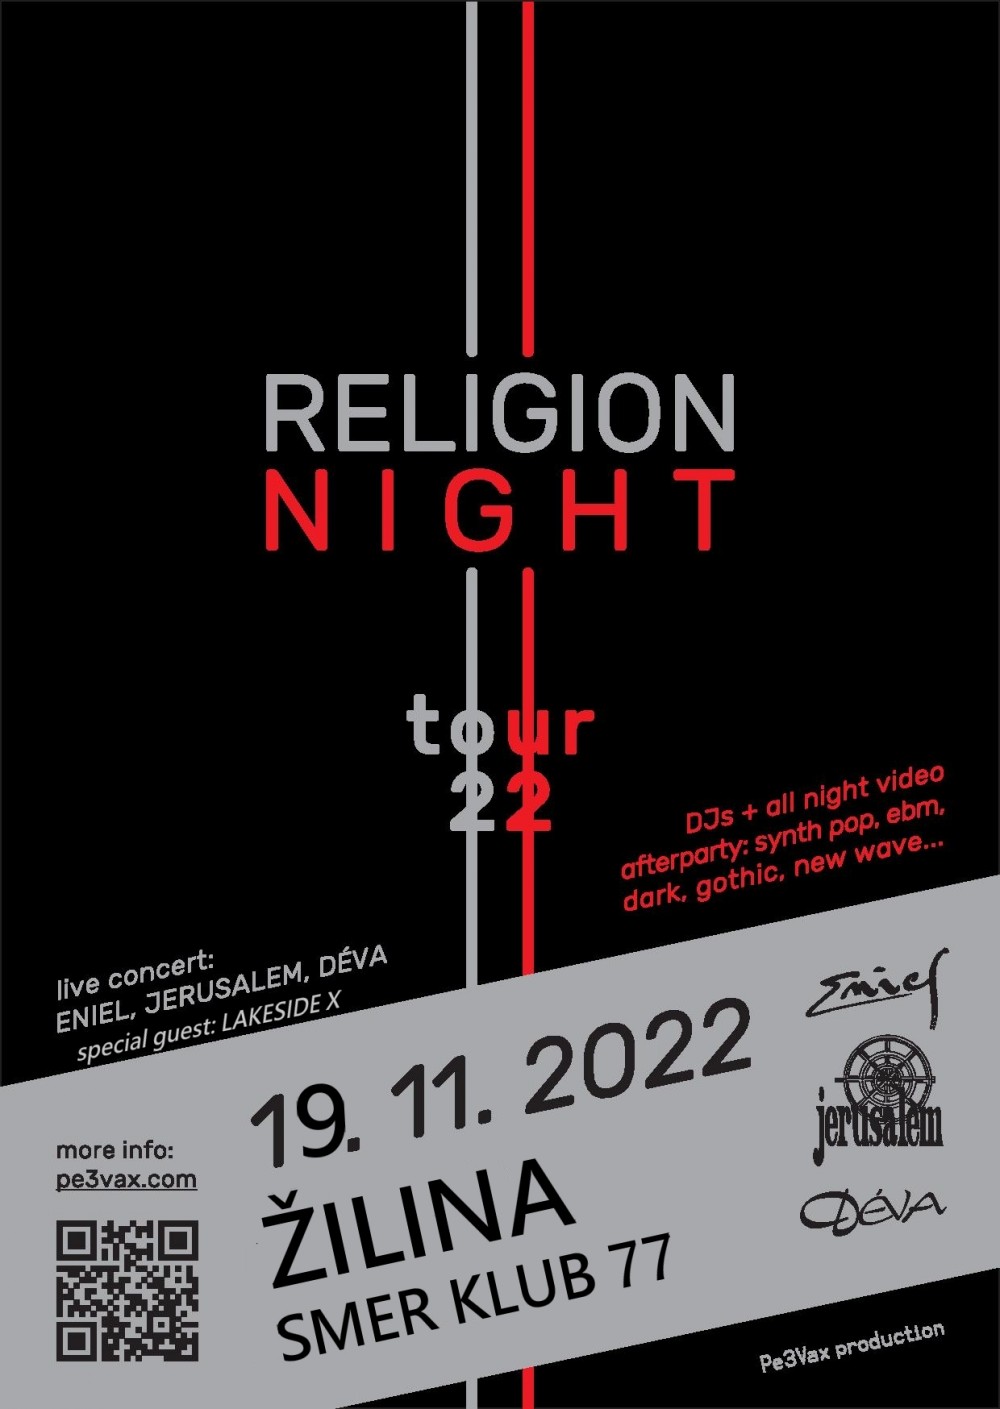 Žilina: Religion Night Tour